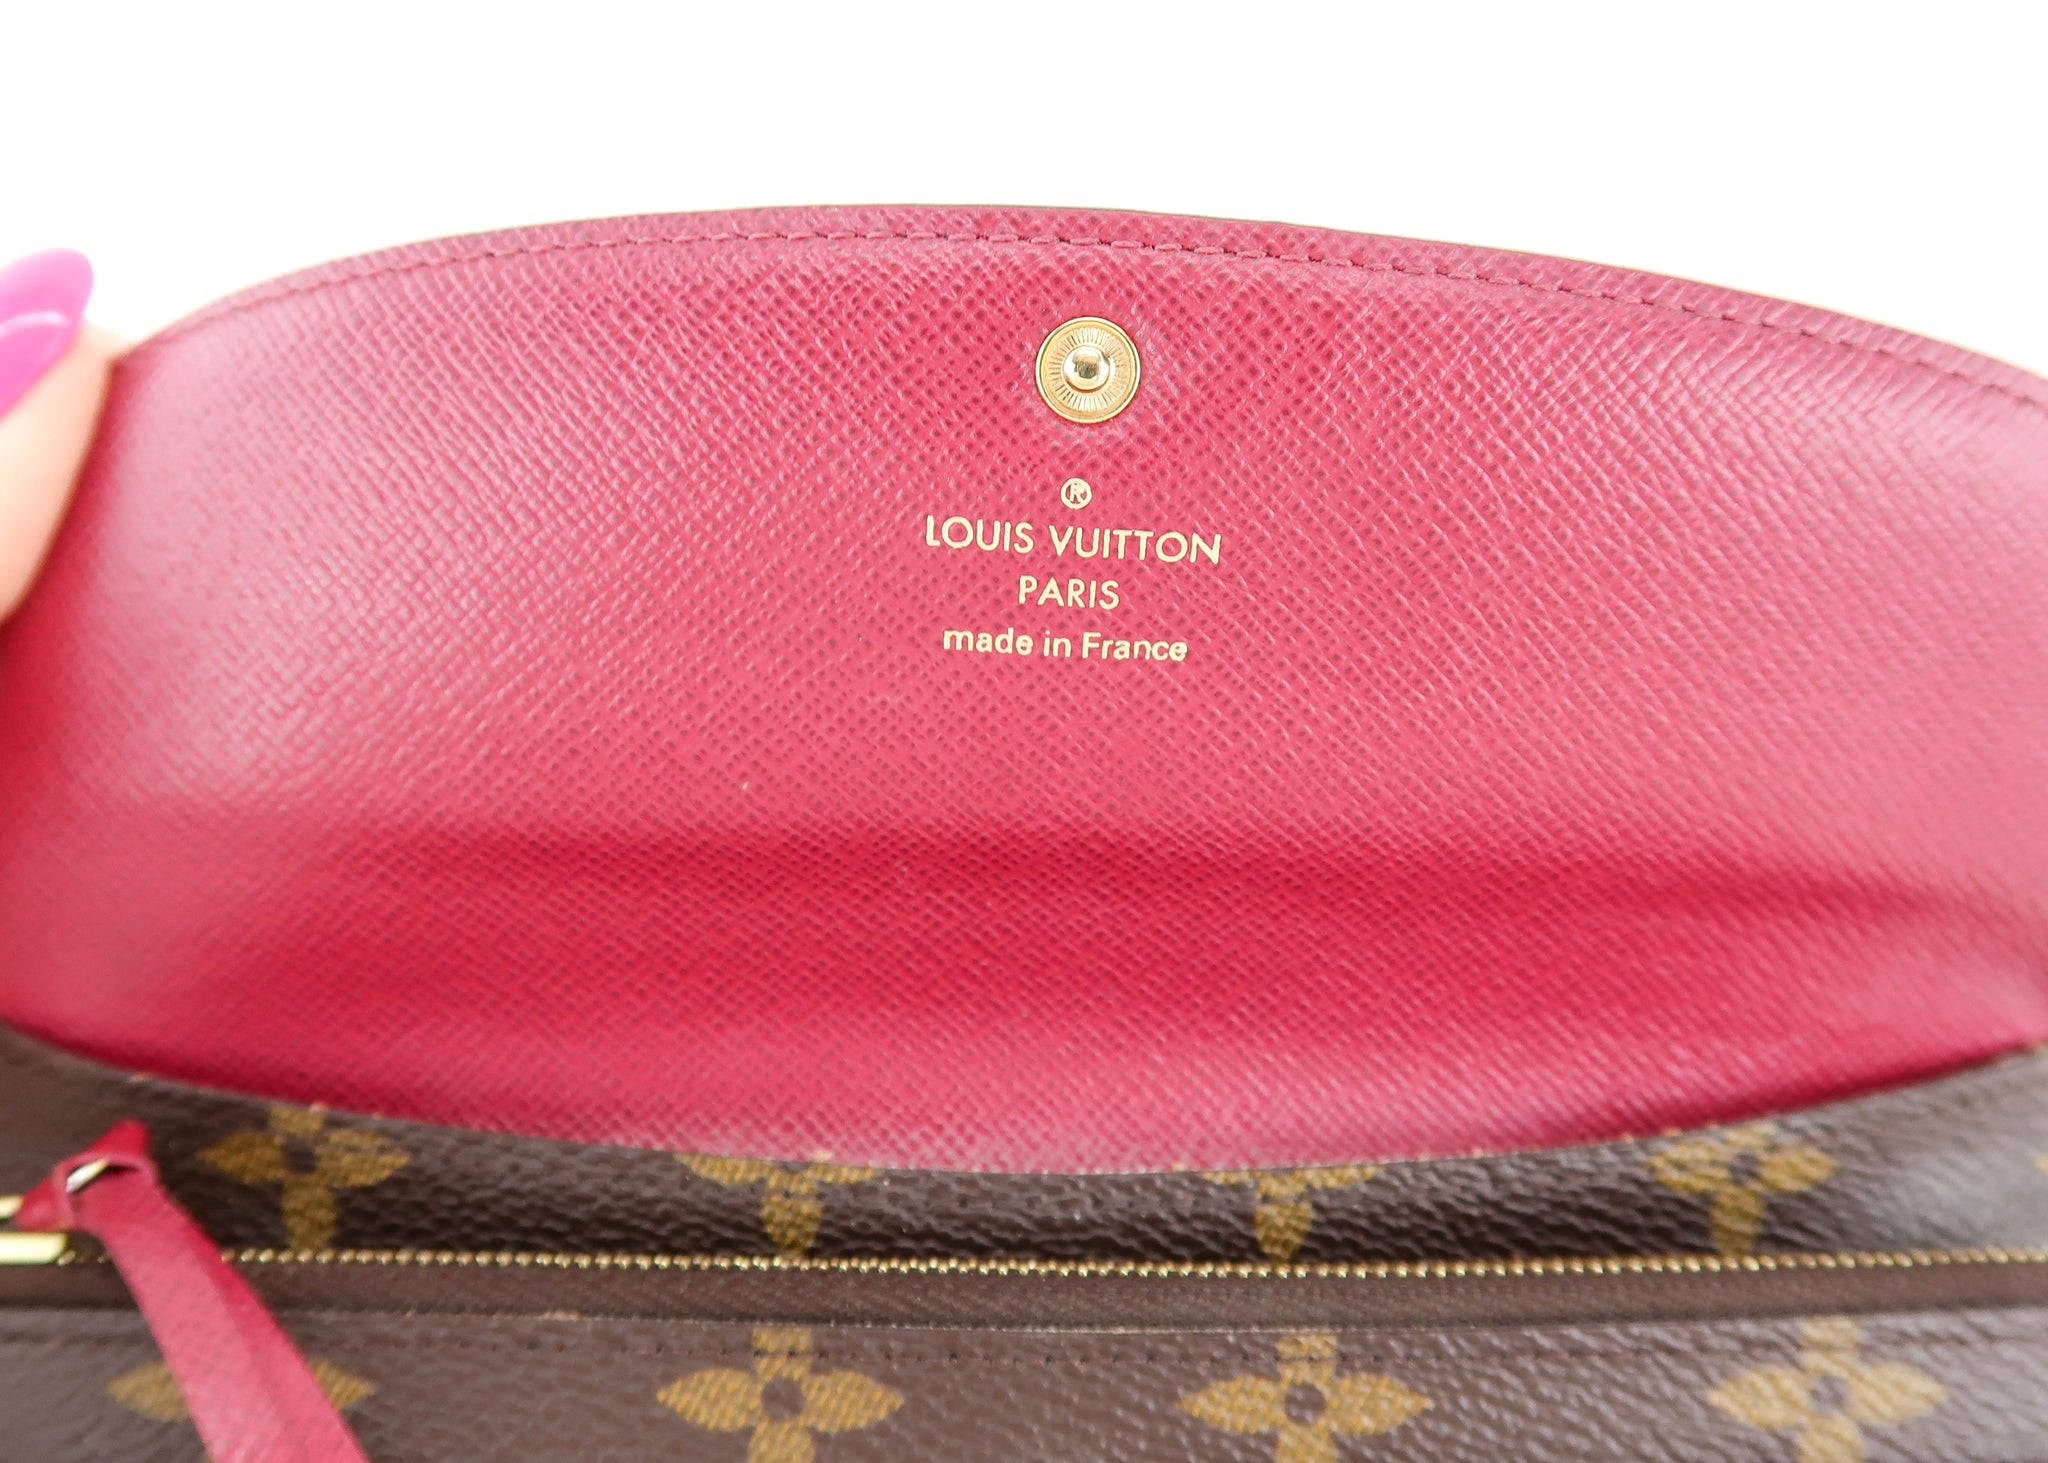 Hot Stamped Louis Vuitton Emilie wallet  Louis vuitton emilie wallet,  Emilie wallet, Louis vuitton handbags outlet